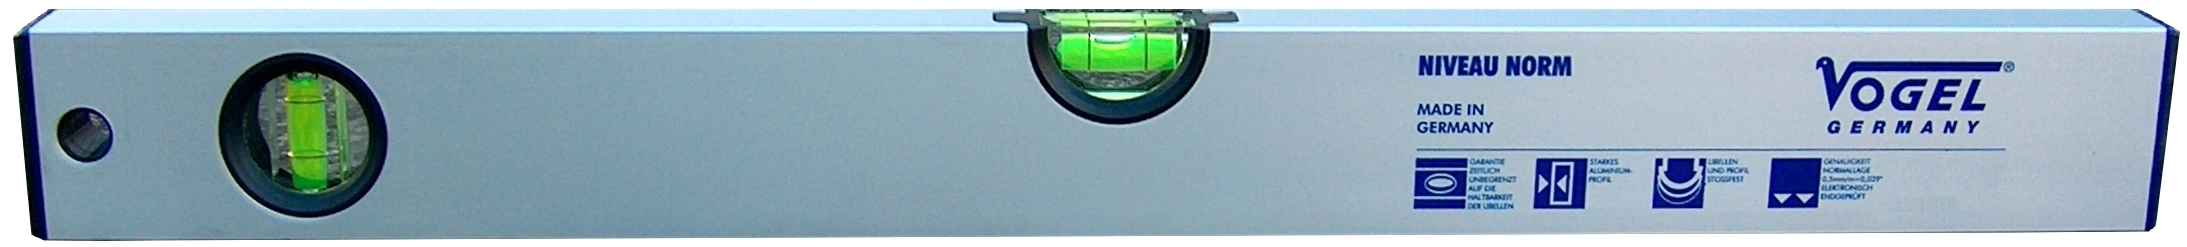 Wasserwaage mit Magnet ist silbereloxiert mit einer Horizontal-Libelle und einer Vertikal-Libelle